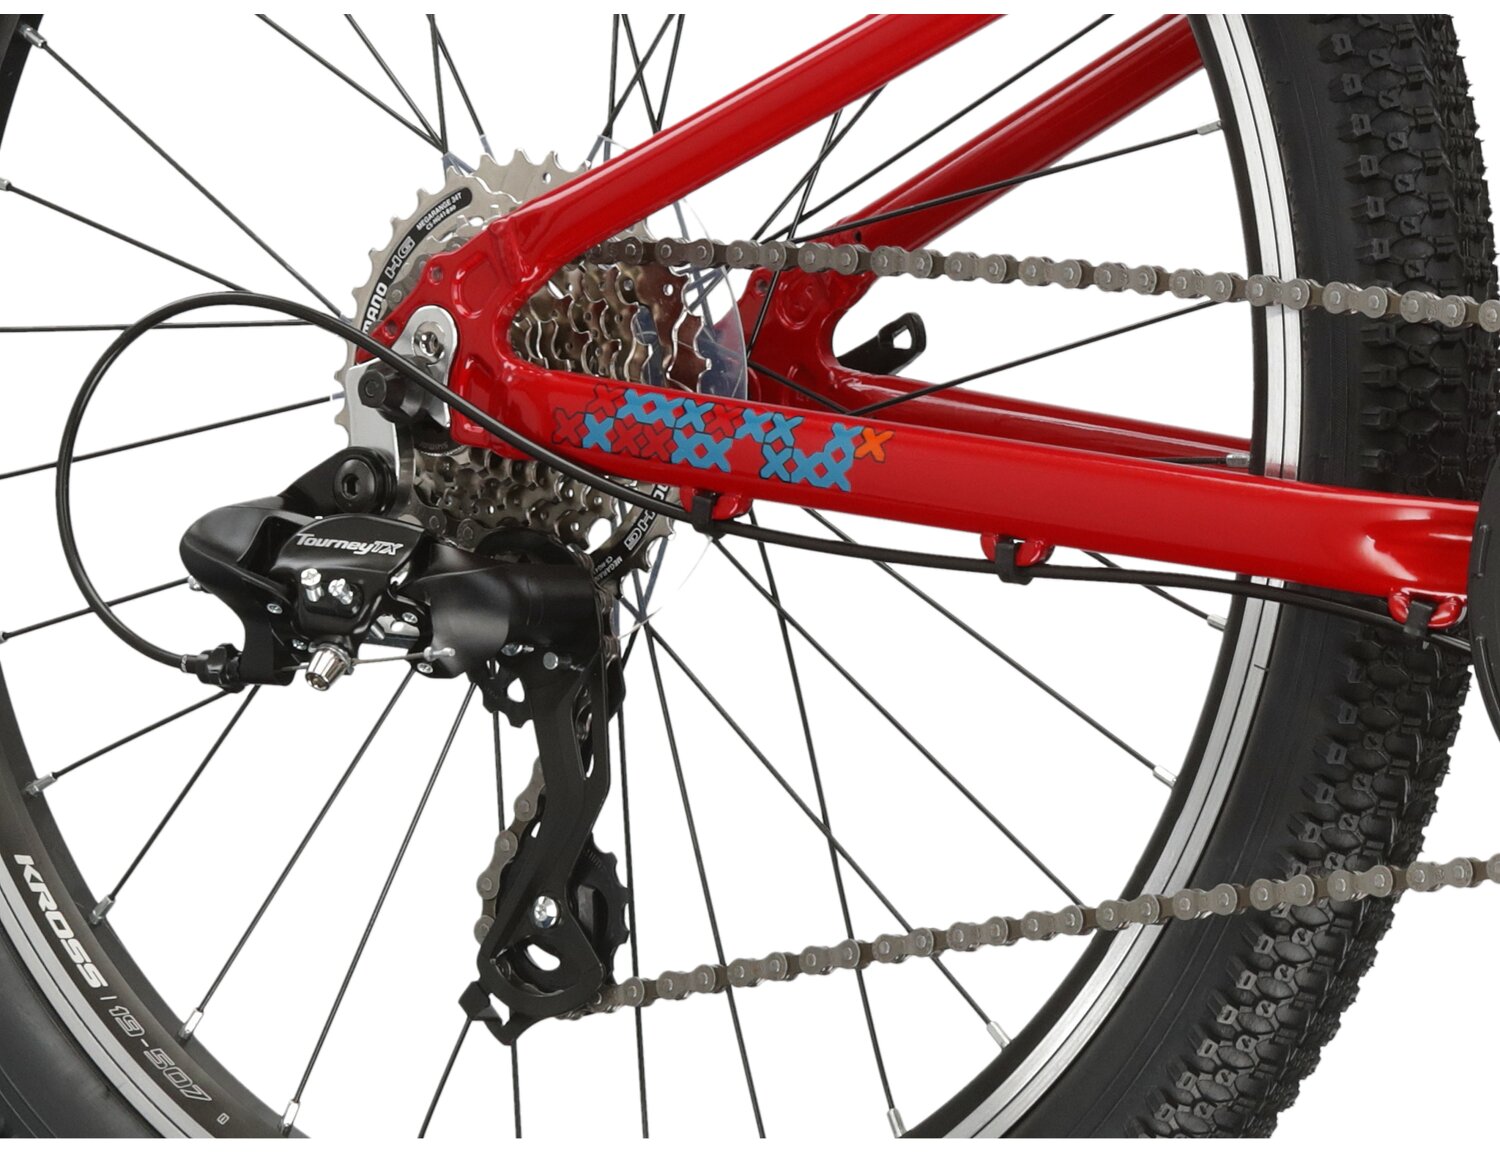  Tylna ośmiobiegowa przerzutka Shimano Tourney TX800 oraz hamulce v-brake w rowerze juniorskim KROSS Level JR 1.0 